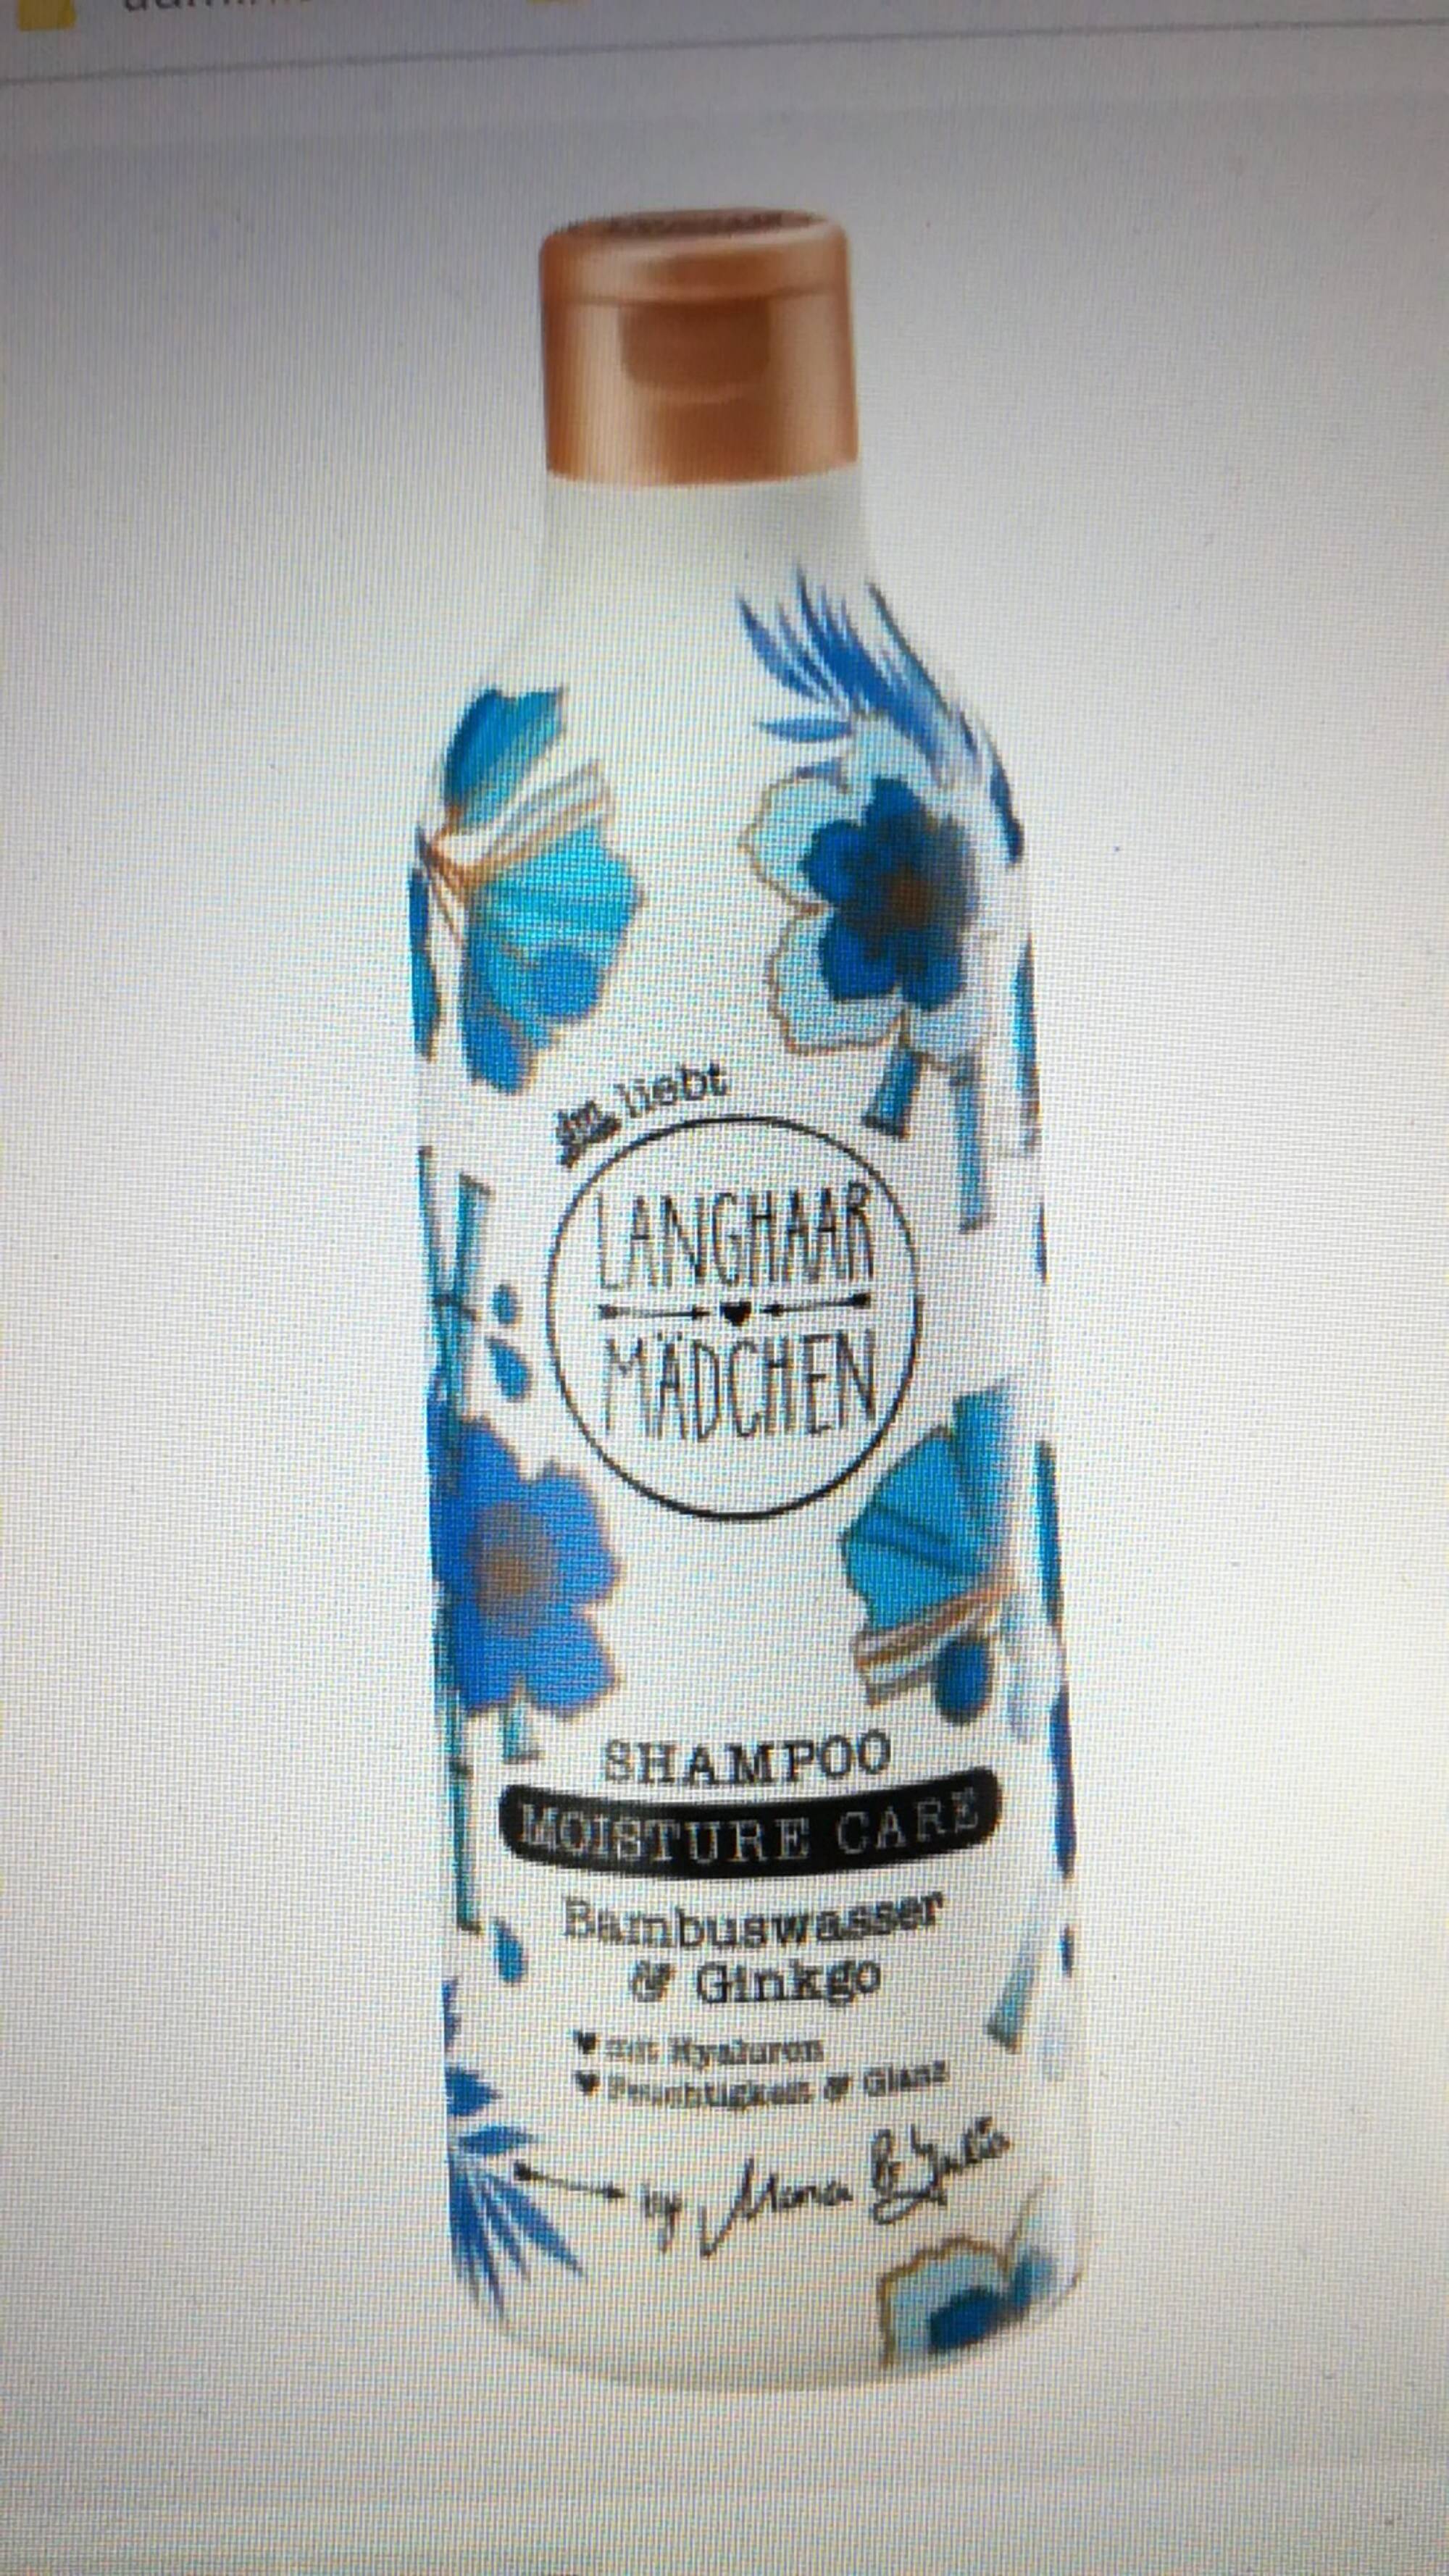 LANGHAAR MADCHEN - Shampoo - Bambuswasser & Ginkgo